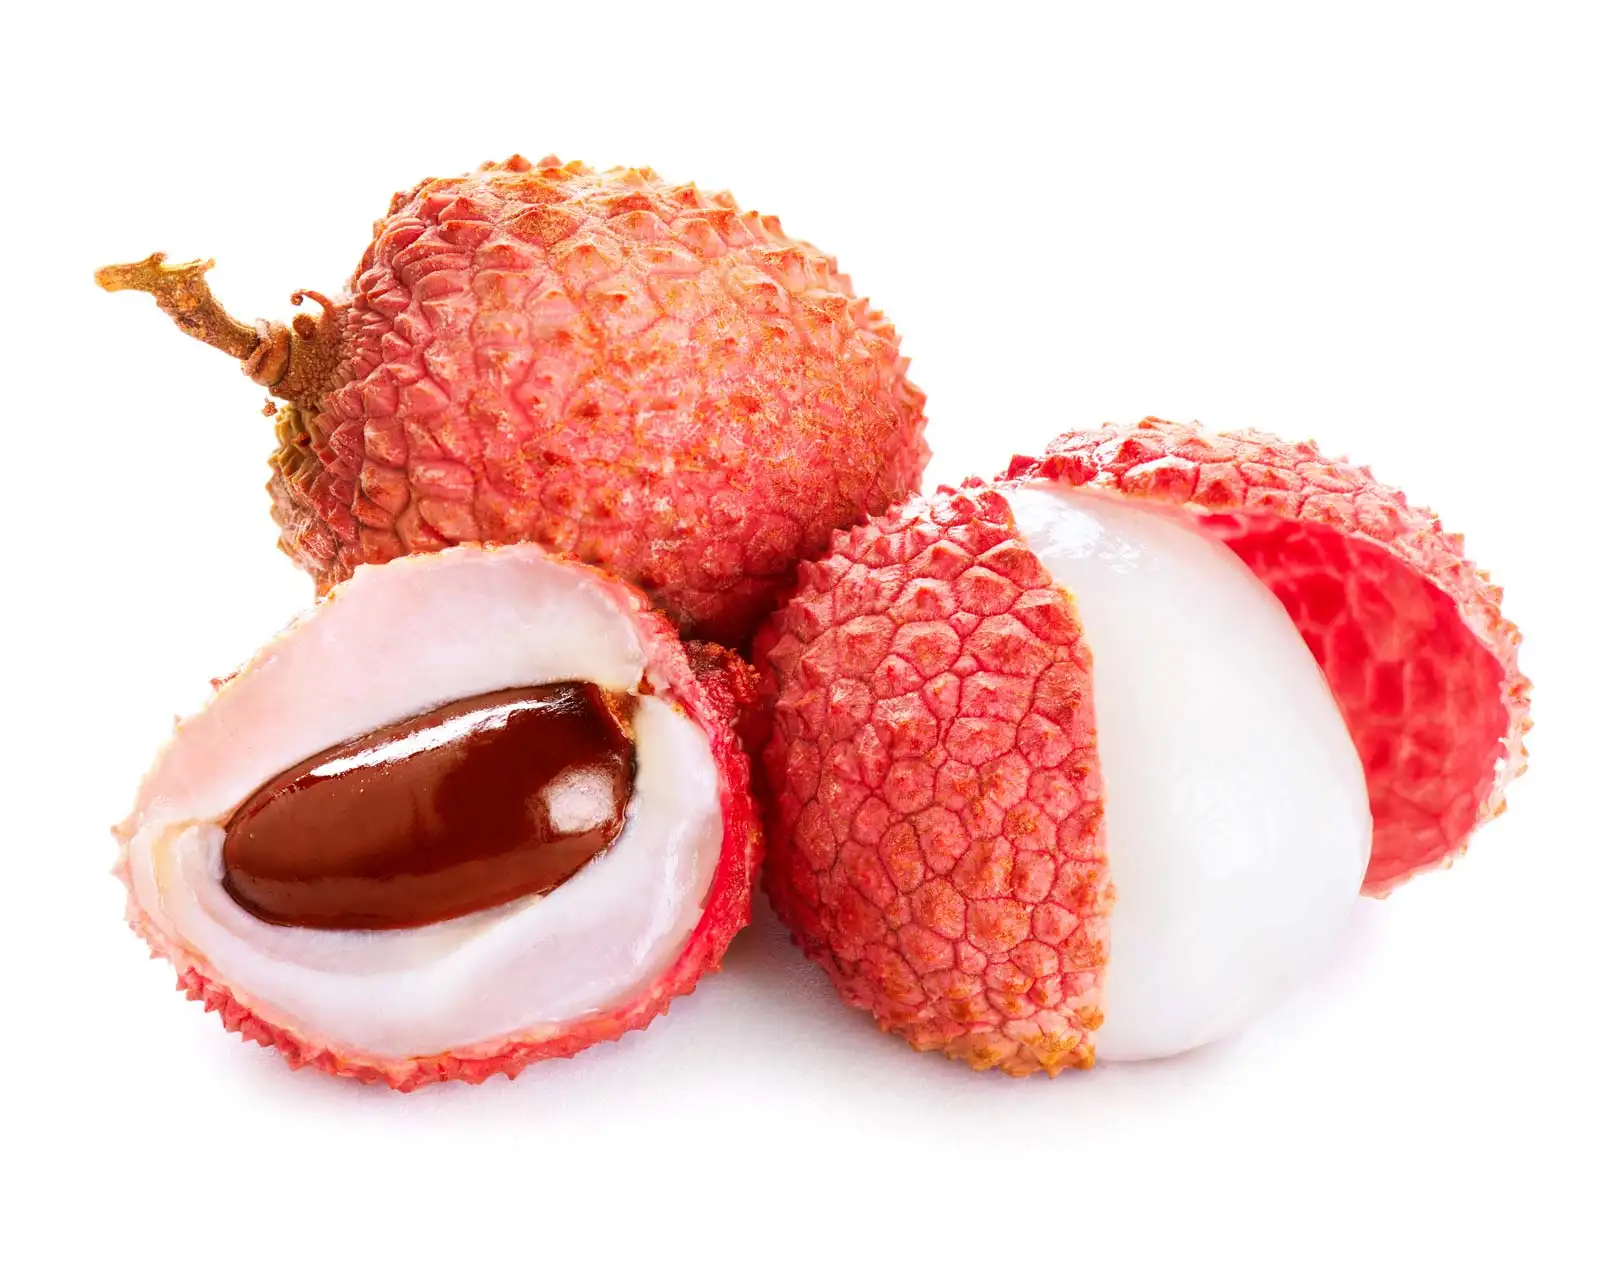 فاكهة الليتشي الطازجة الحلو مع معقولة من أفضل الفواكه الطازجة فيتنام الجملة نكهة طبيعية